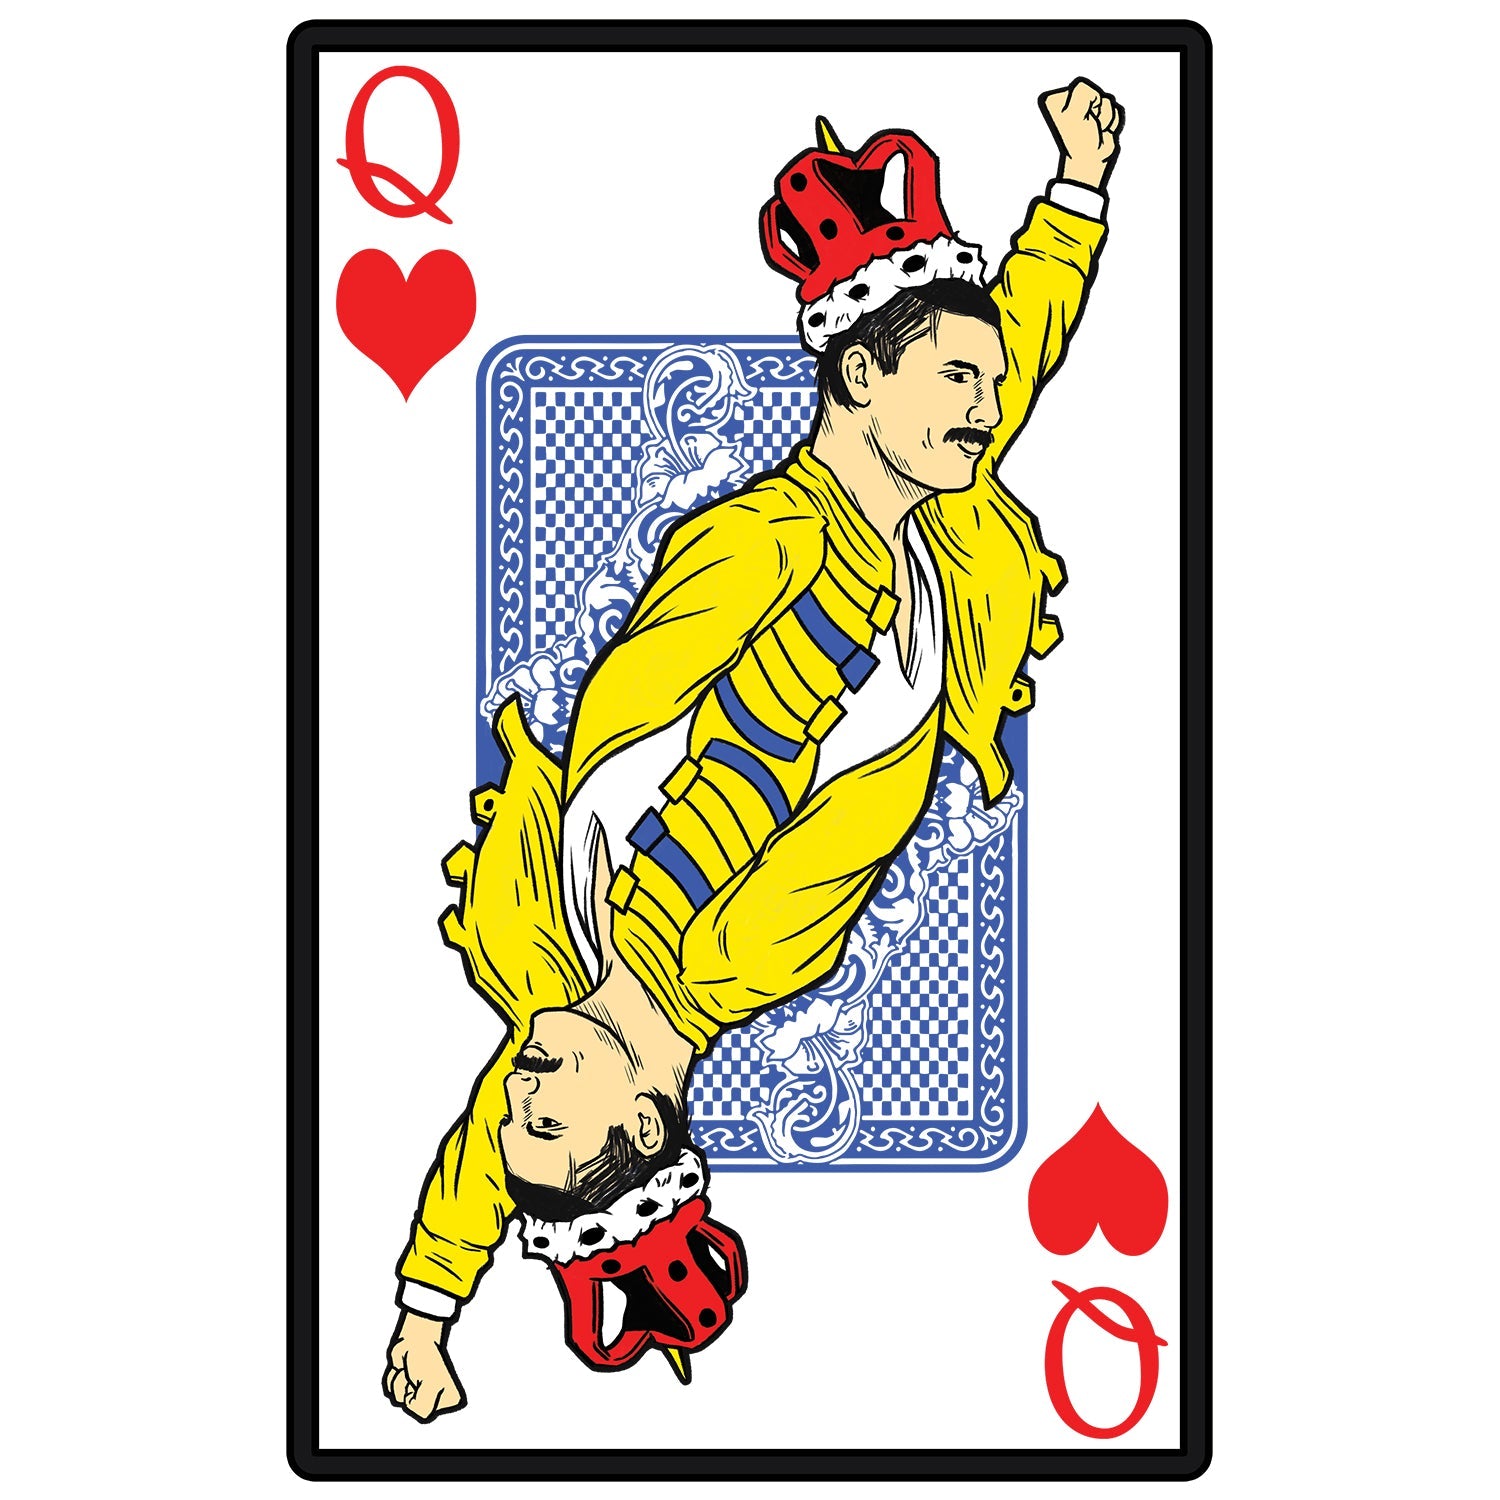 Queen of Cards Kids T Shirt